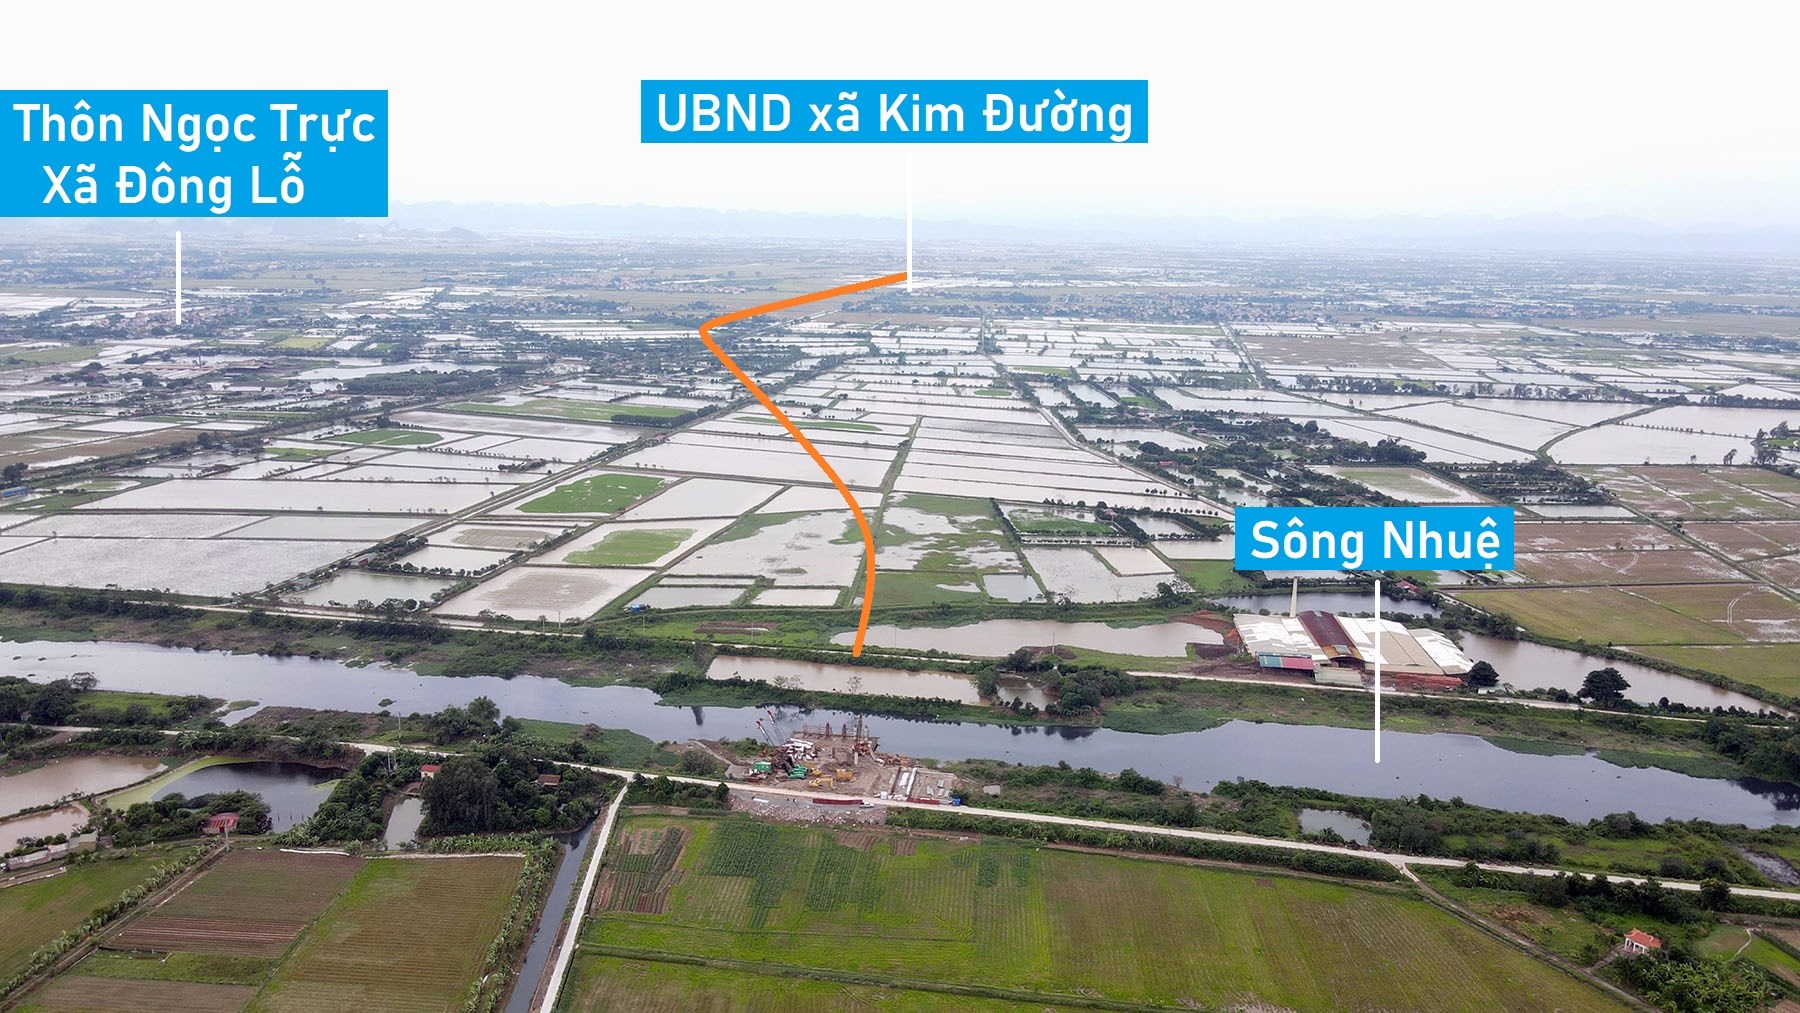 Toàn cảnh đường trục phía nam rộng 40 m đang xây dựng qua huyện Ứng Hòa, Hà Nội